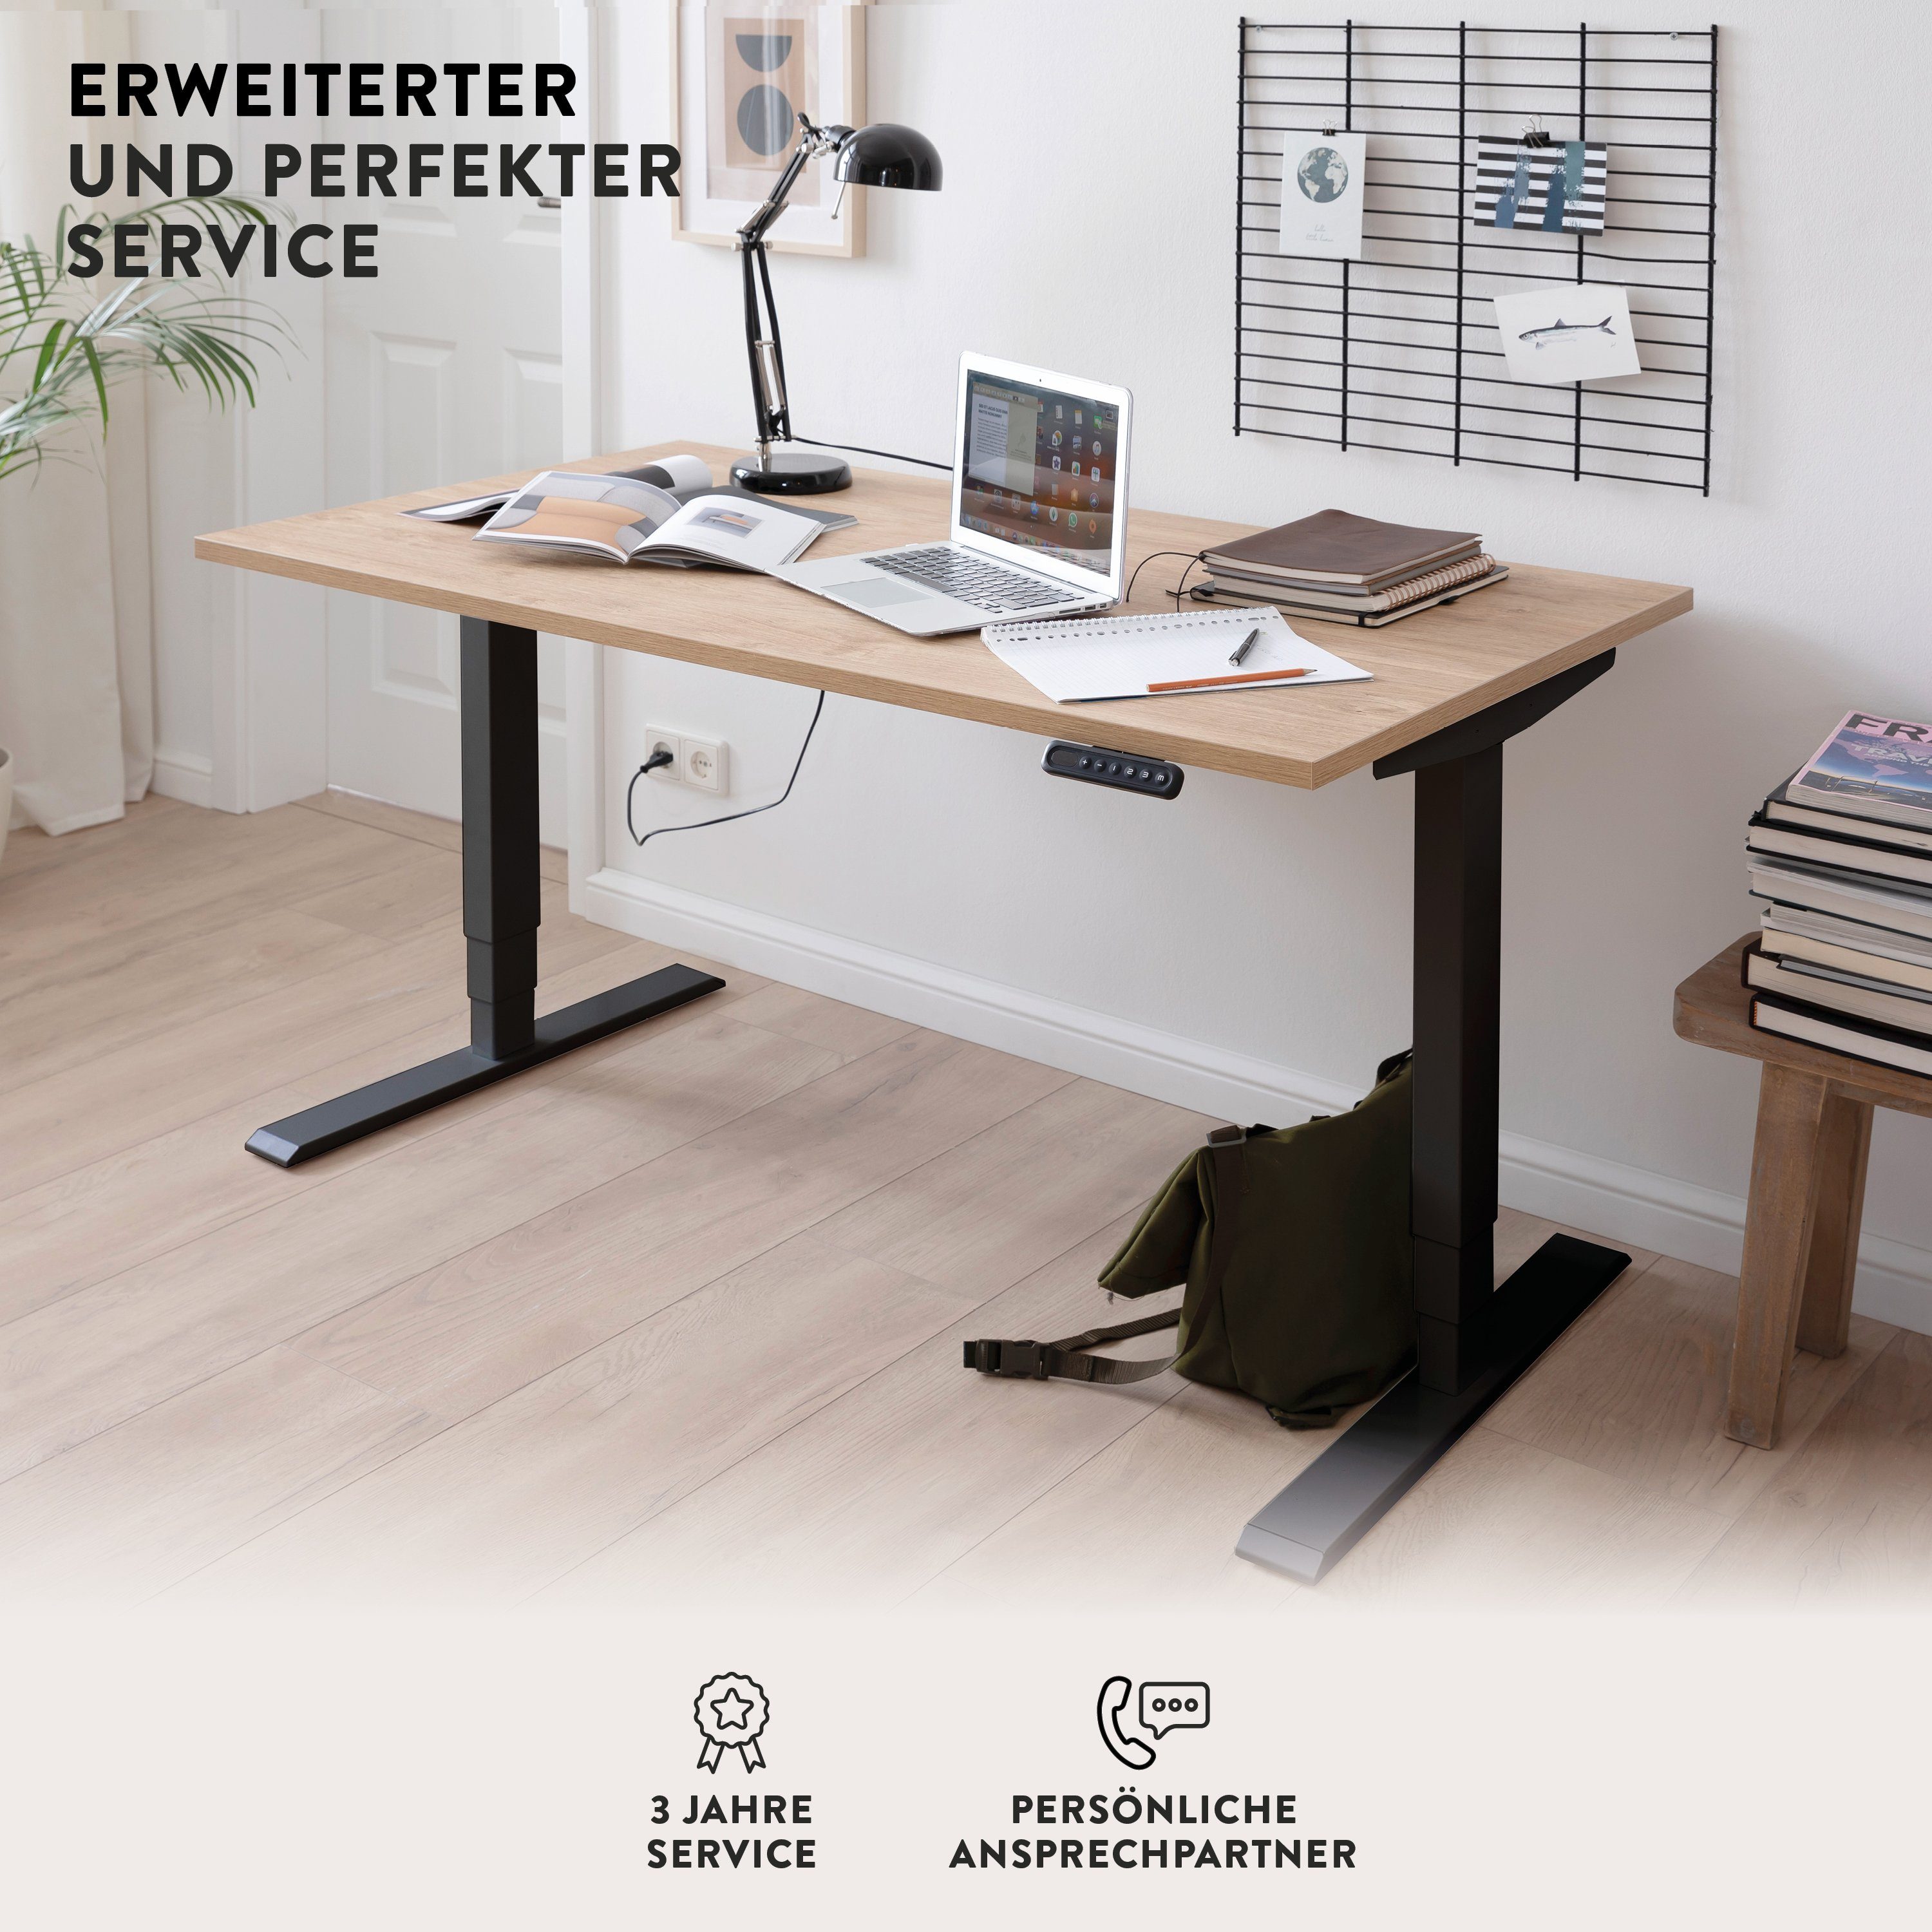 boho office® Schreibtisch Homedesk Schwarz Speicherplätzen stufenlos Schwarz in höhenverstellbar elektrisch | mit 3 (Tischgestell), Schwarz